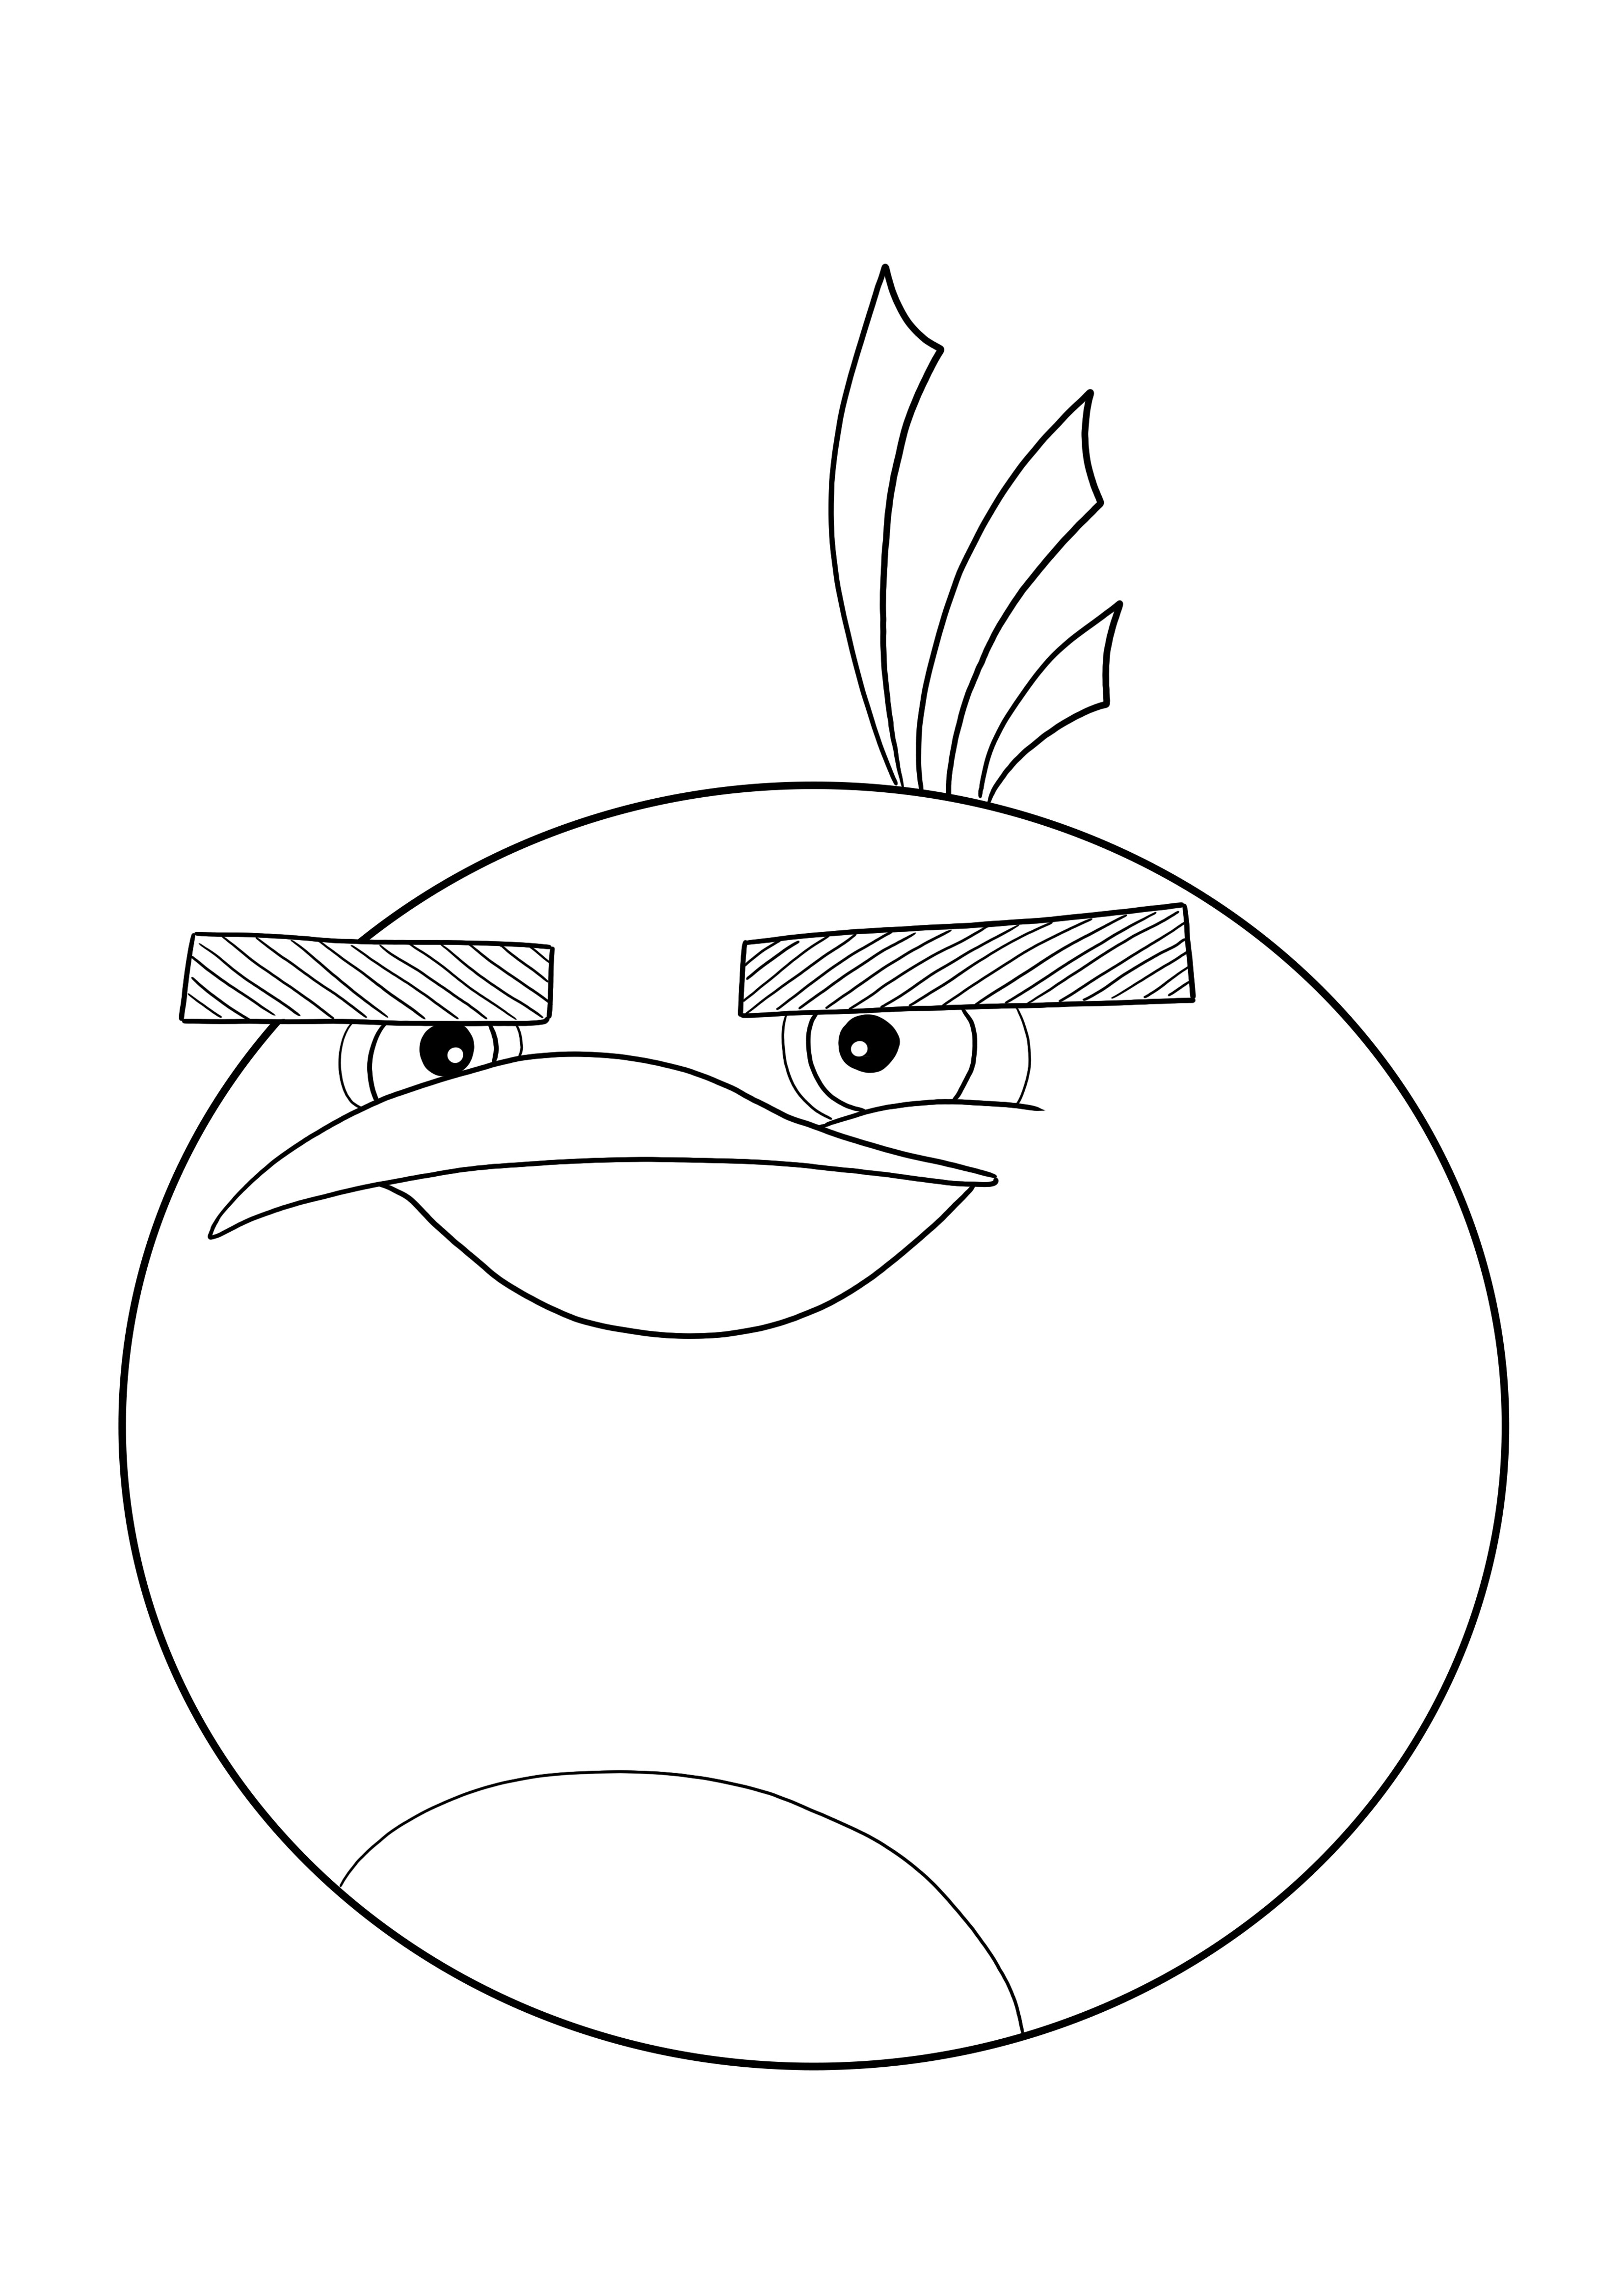 Halaman mewarnai Bomb dari Angry Birds gratis untuk dicetak dan diunduh